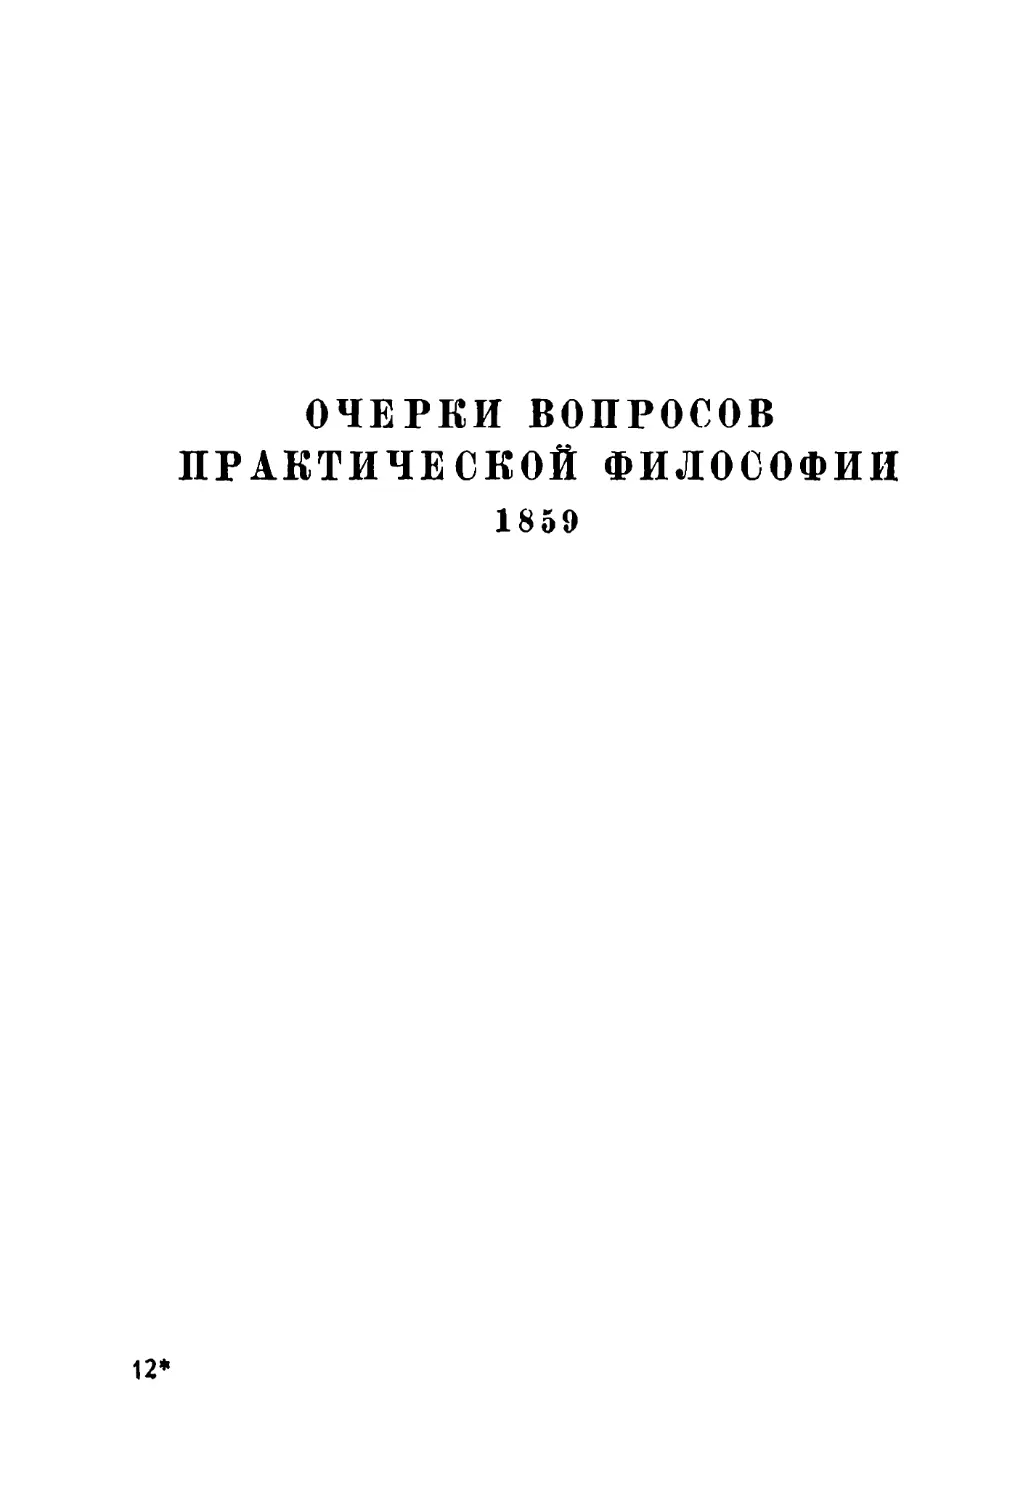 Очерки вопросов практической философии. 1859